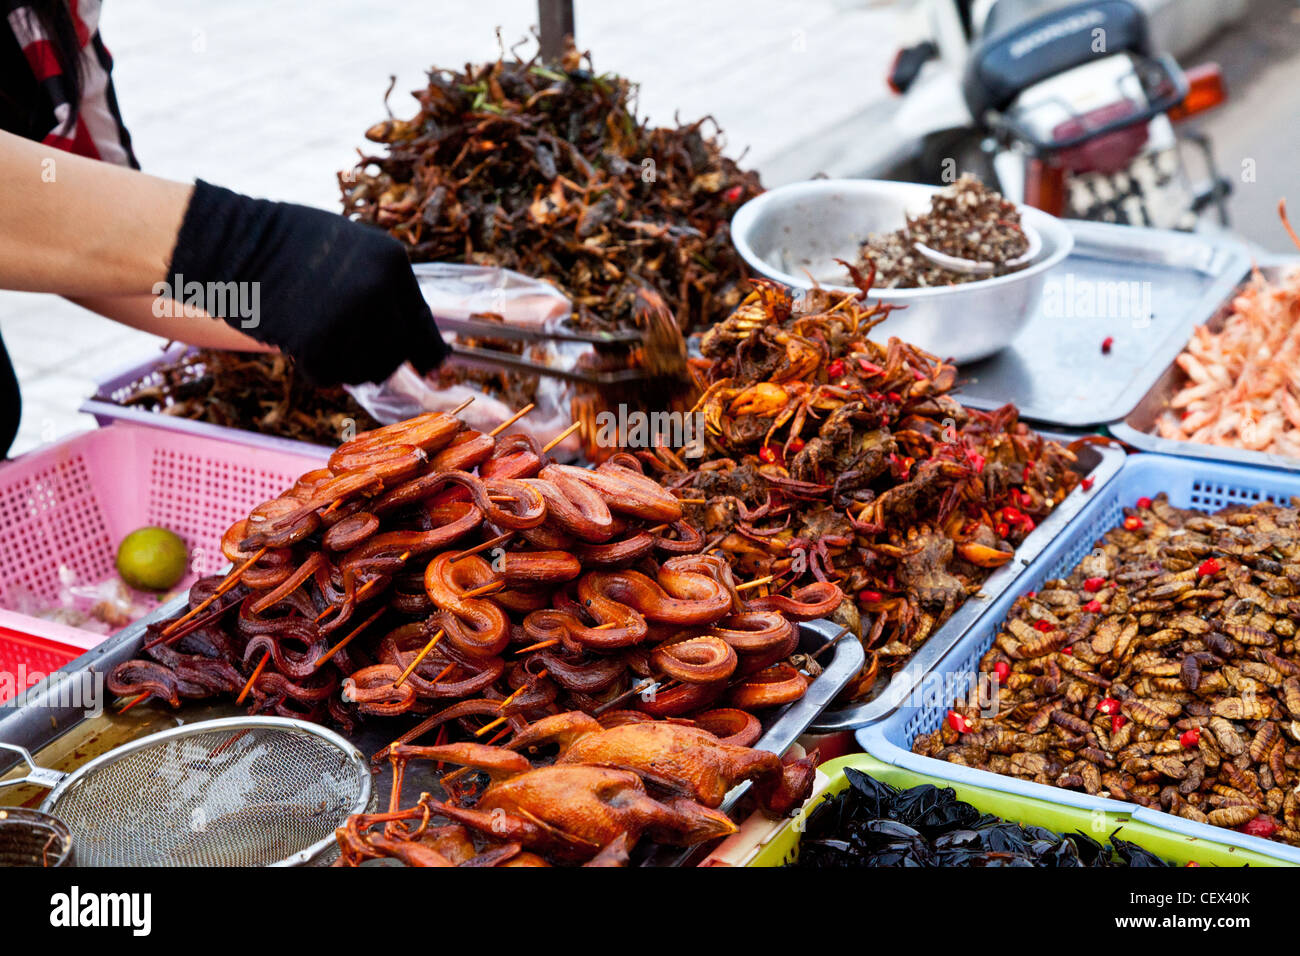 Un mercato in stallo in Phnom Penh Cambogia vendita di deep-snack fritti come serpenti, rane, scarafaggi e granchi Foto Stock